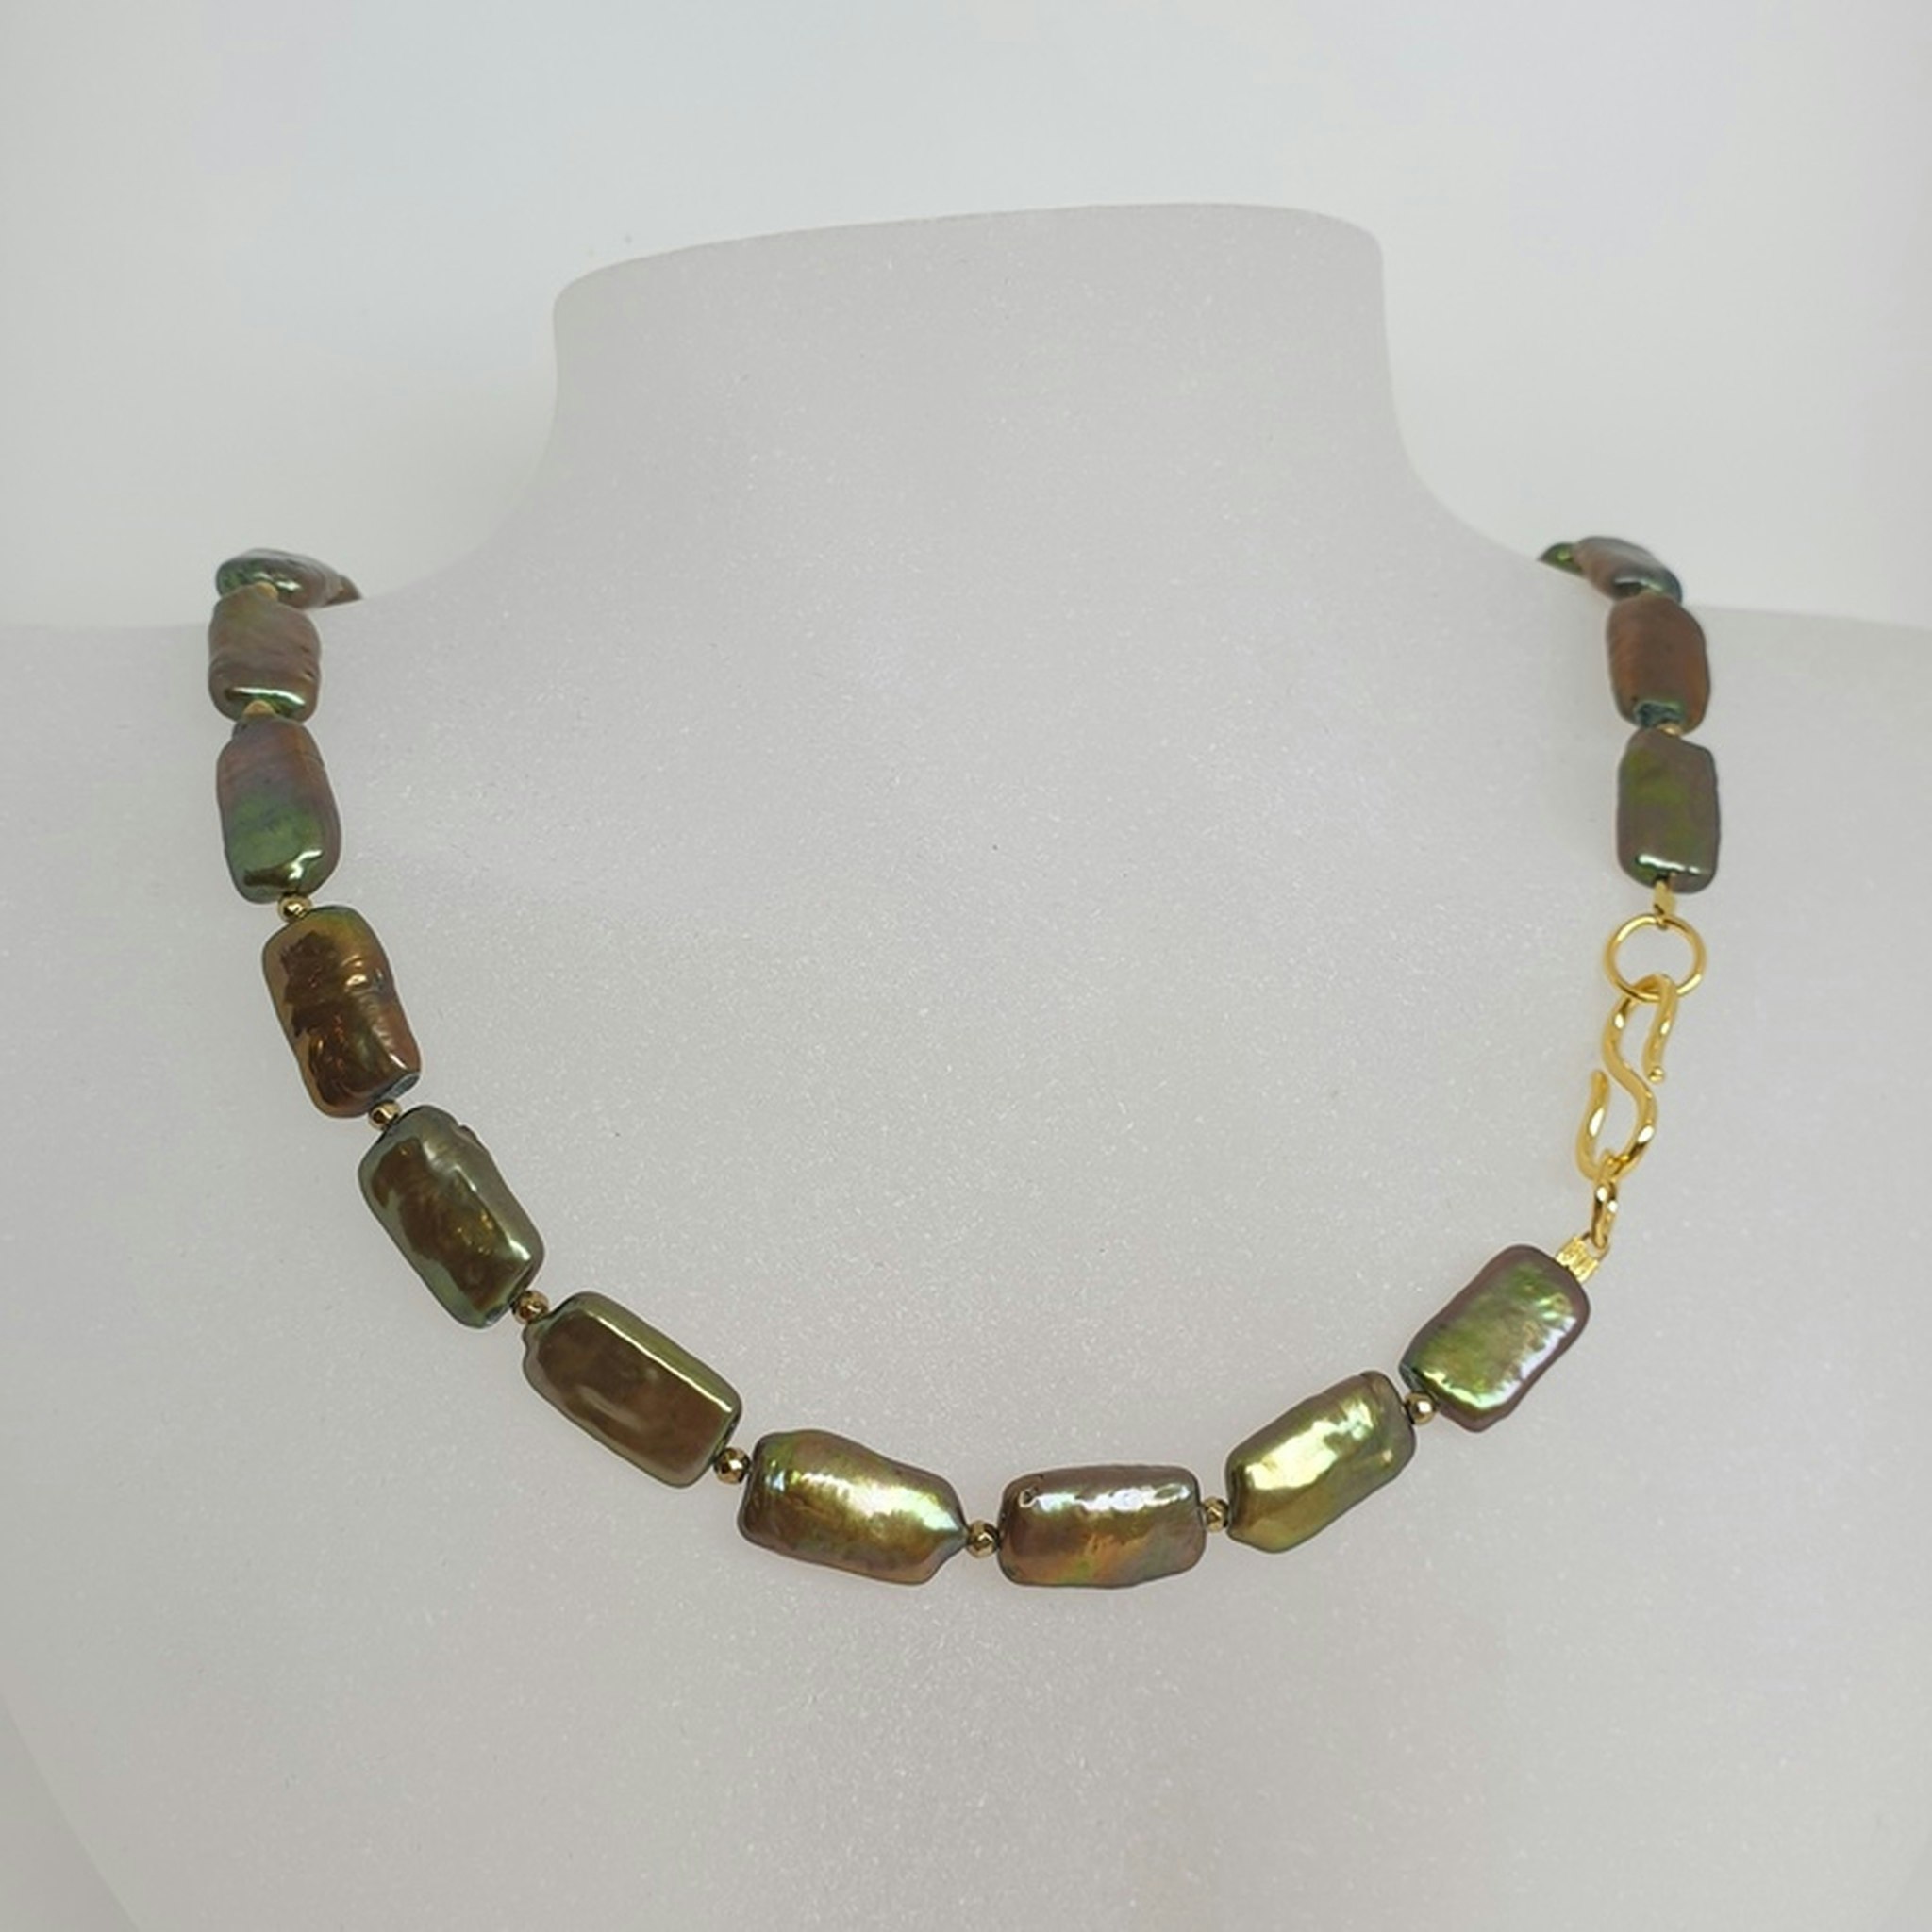 Halsband med gröna avlånga pärlor och förgyllt silverlås